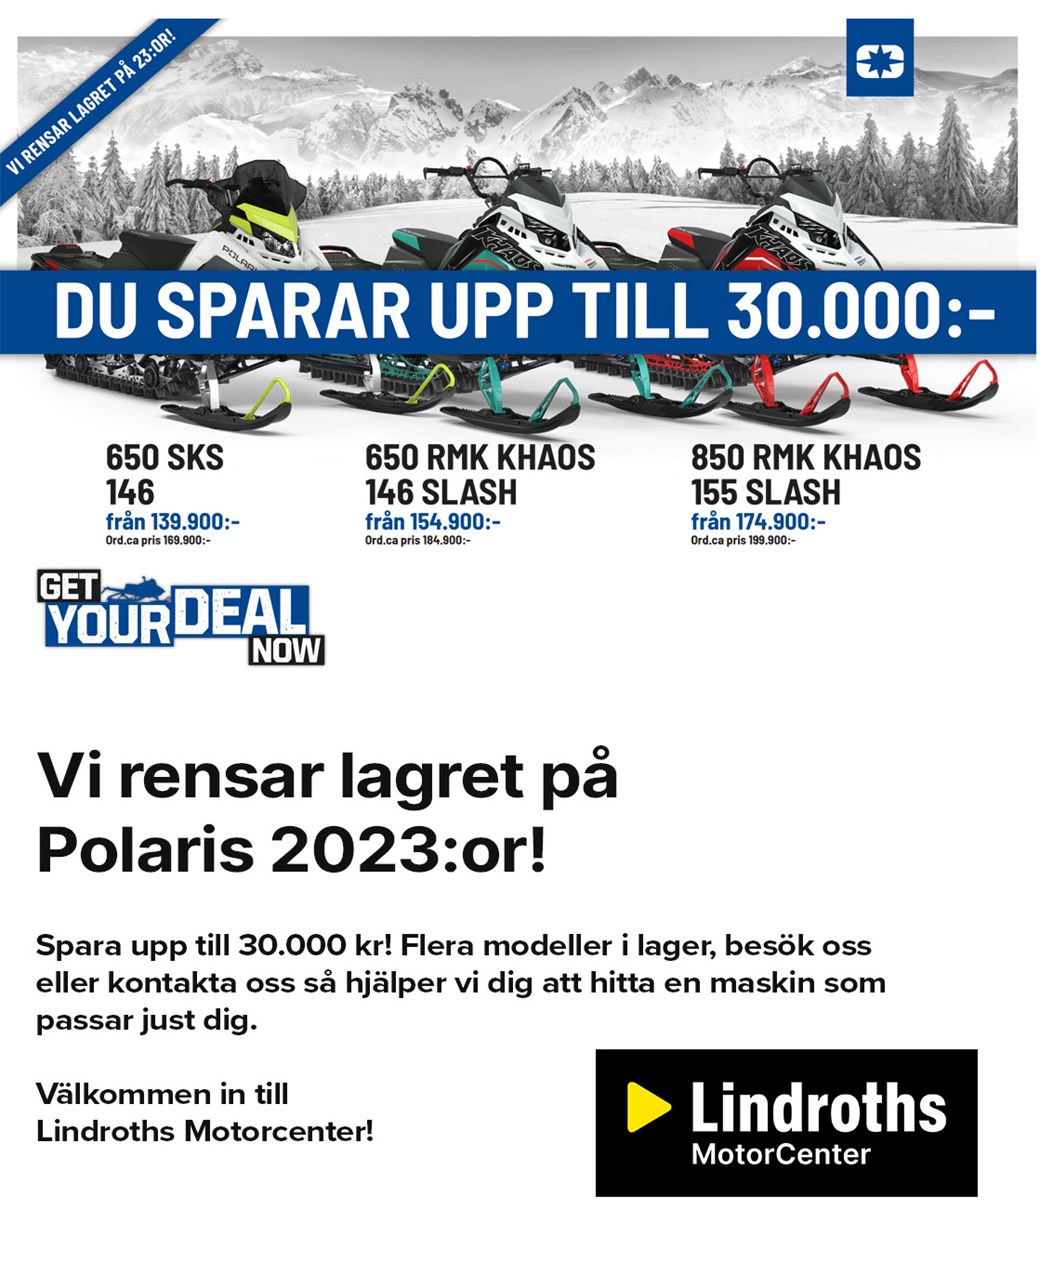 Polaris 2023:or spara upp till 30.000 kr!